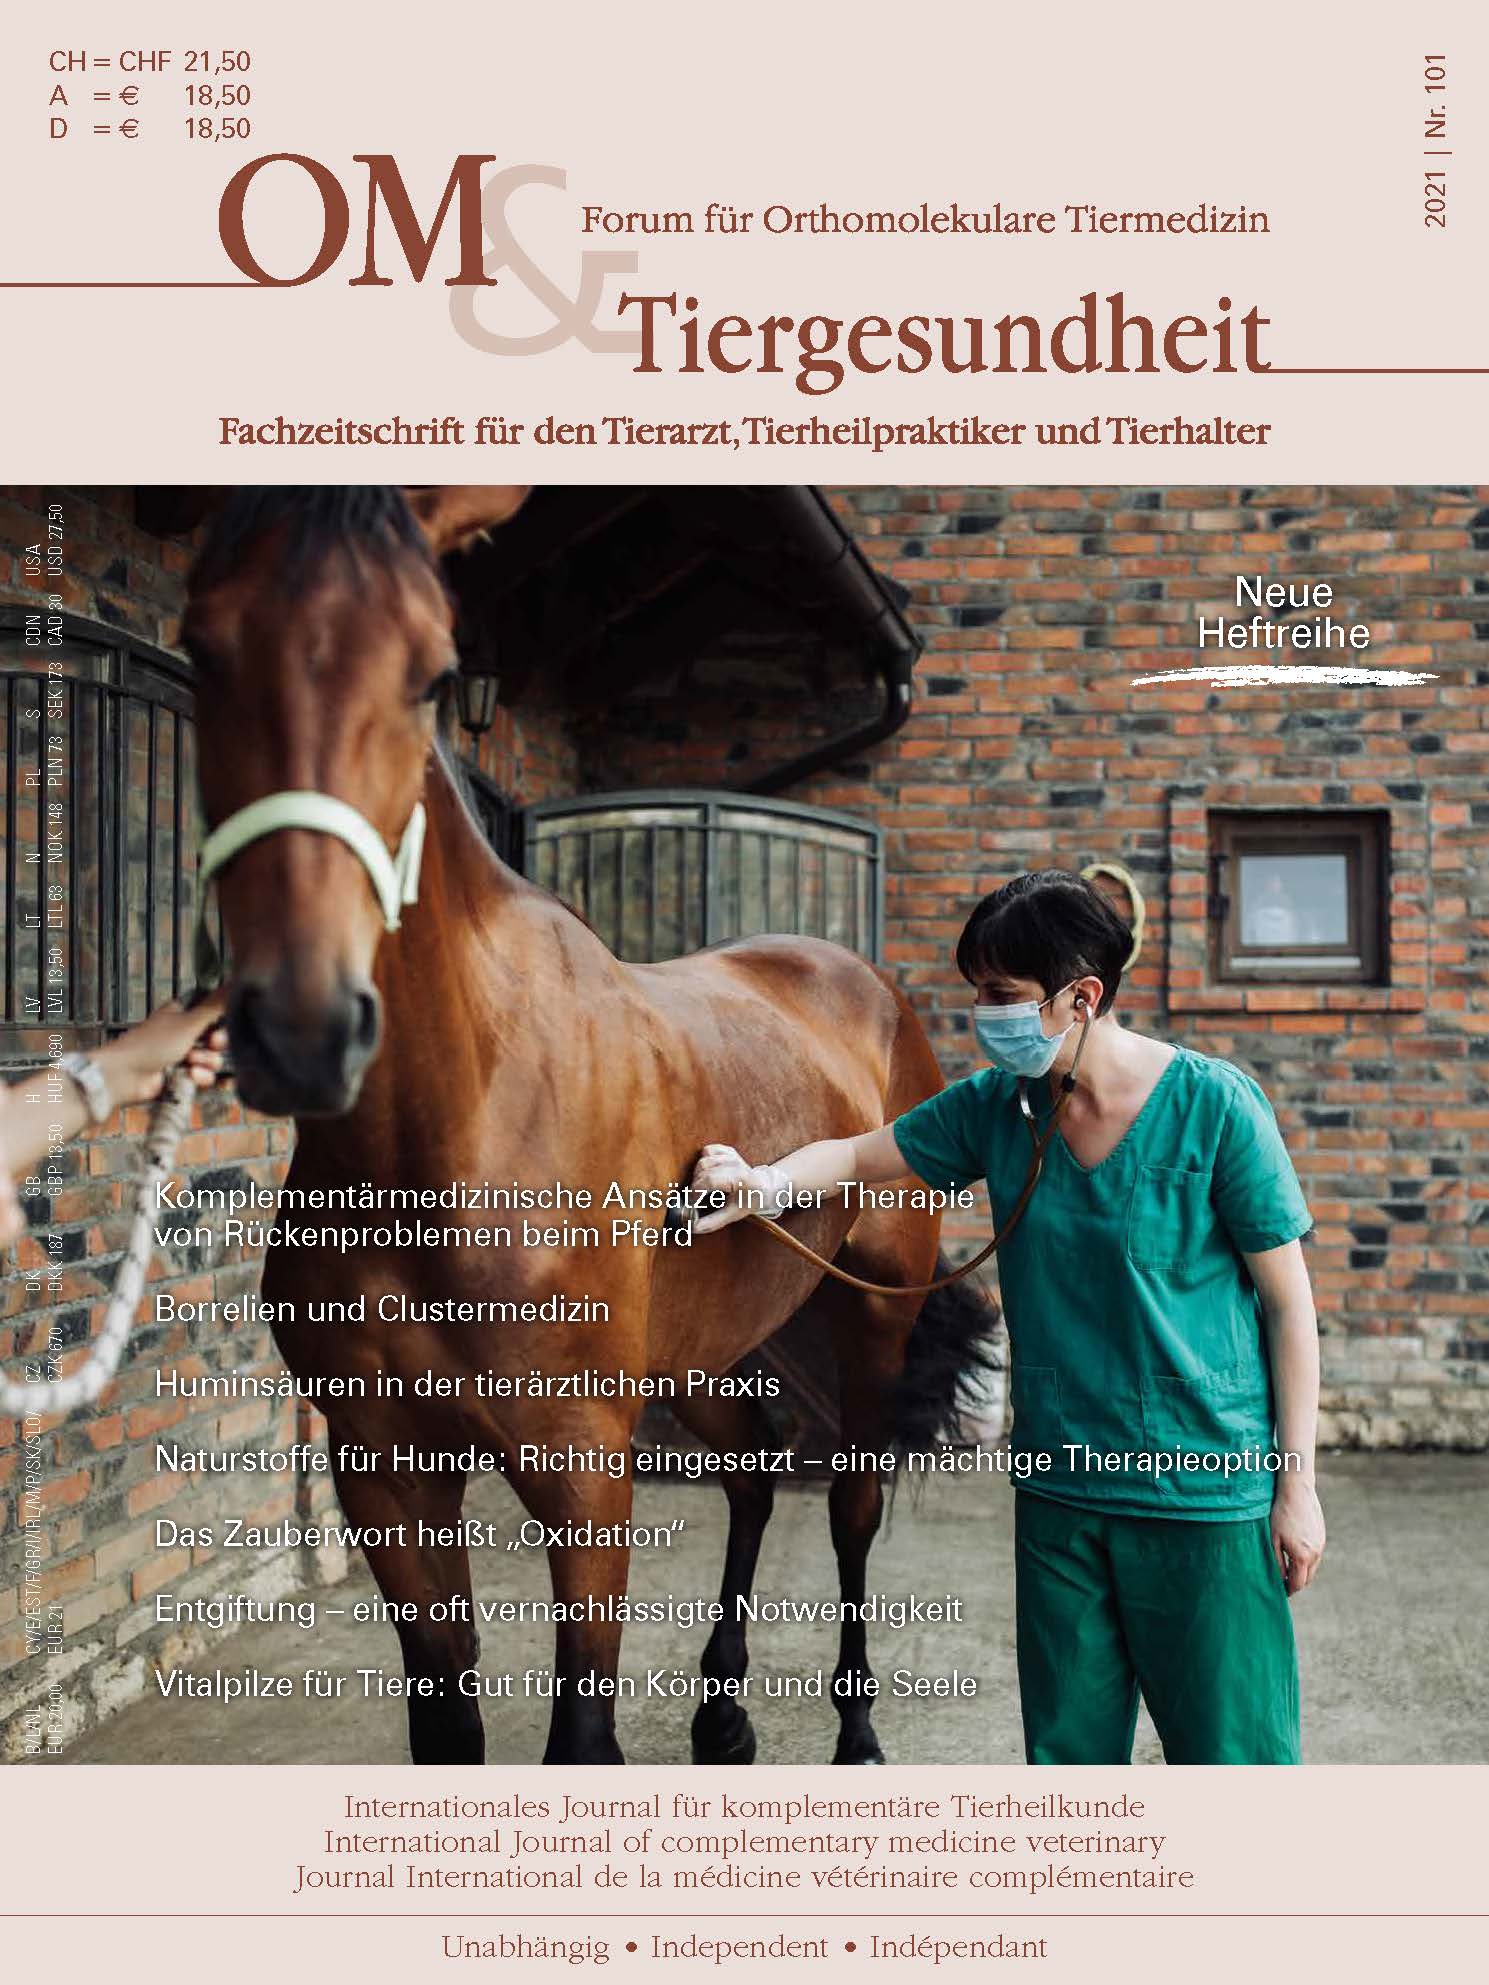  Komplementärmedizinische Ansätze in der Therapie von Rückenproblemen beim Pferd